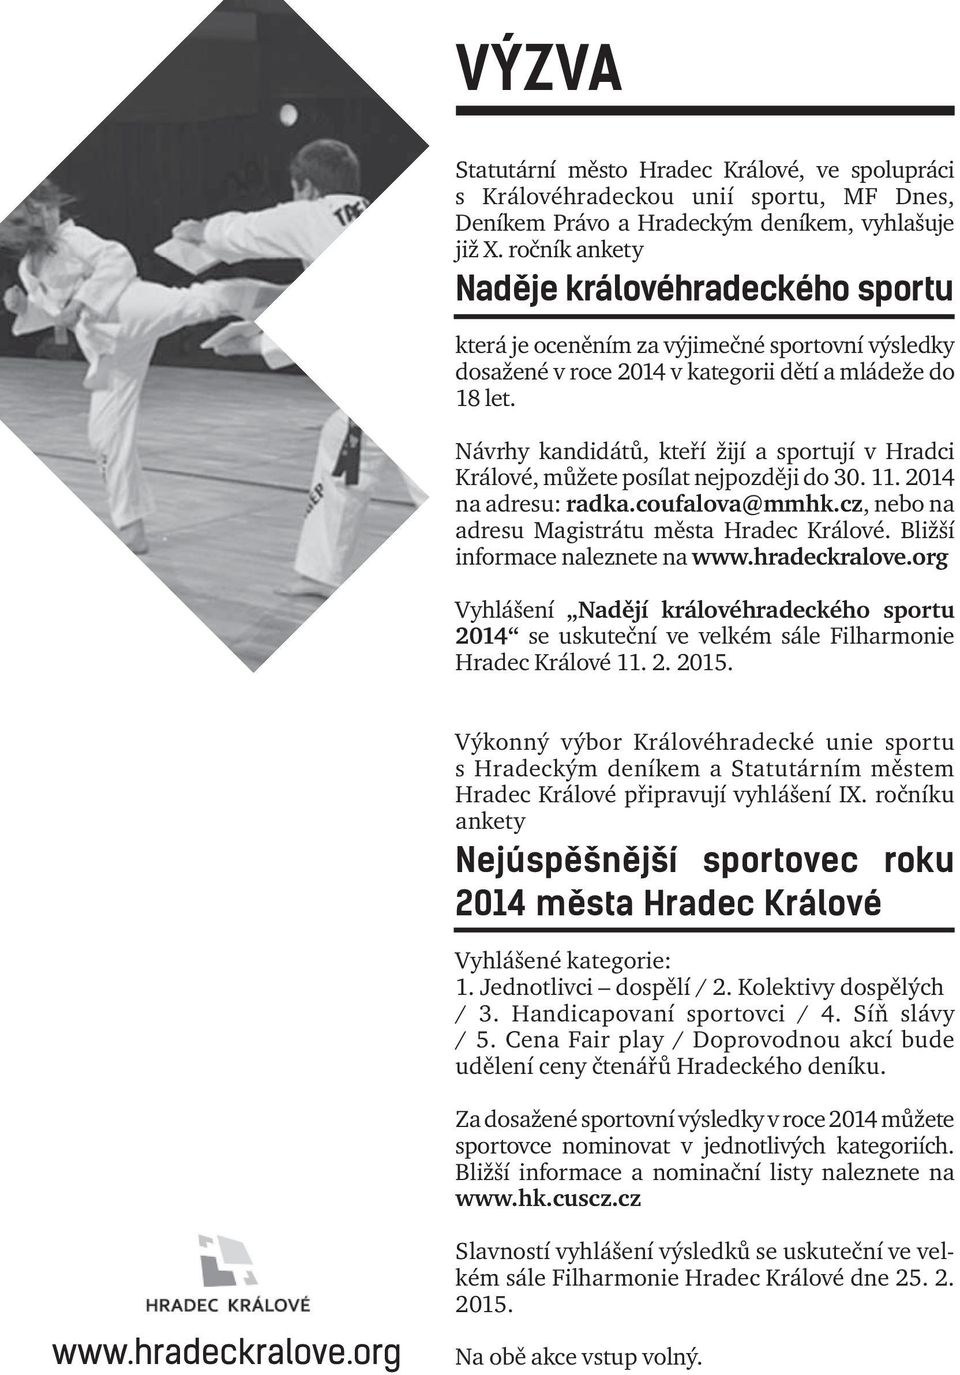 Návrhy kandidátů, kteří žijí a sportují v Hradci Králové, můžete posílat nejpozději do 30. 11. 2014 na adresu: radka.coufalova@mmhk.cz, nebo na adresu Magistrátu města Hradec Králové.